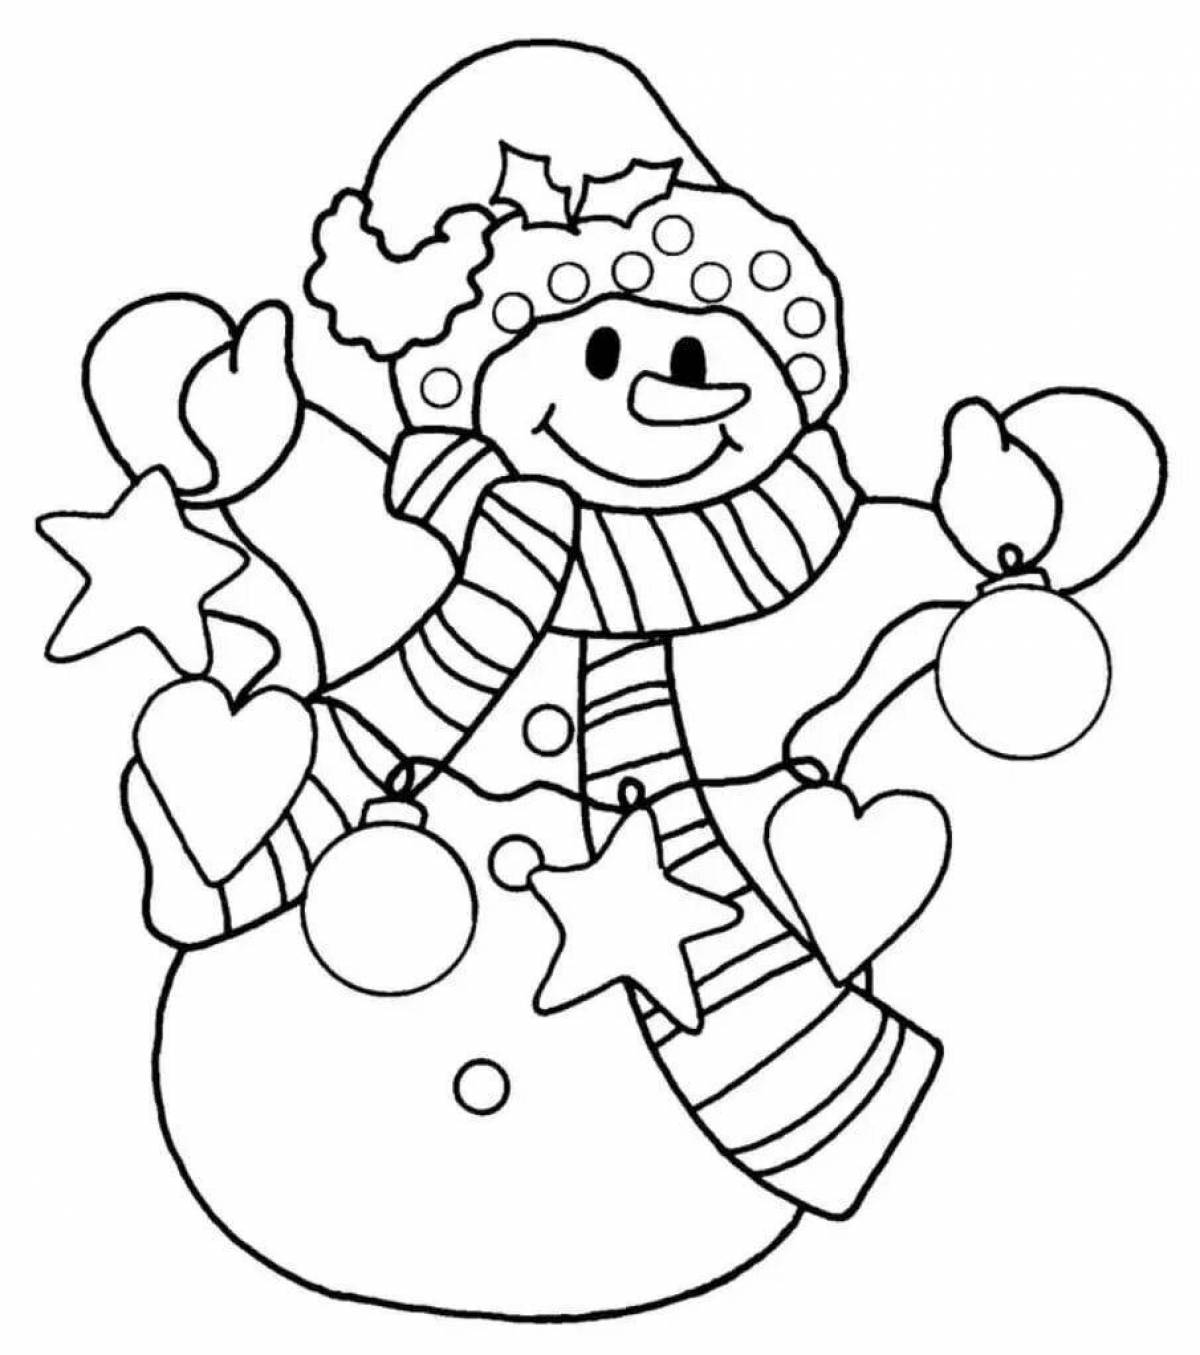 Раскраска радостный новогодний снеговик